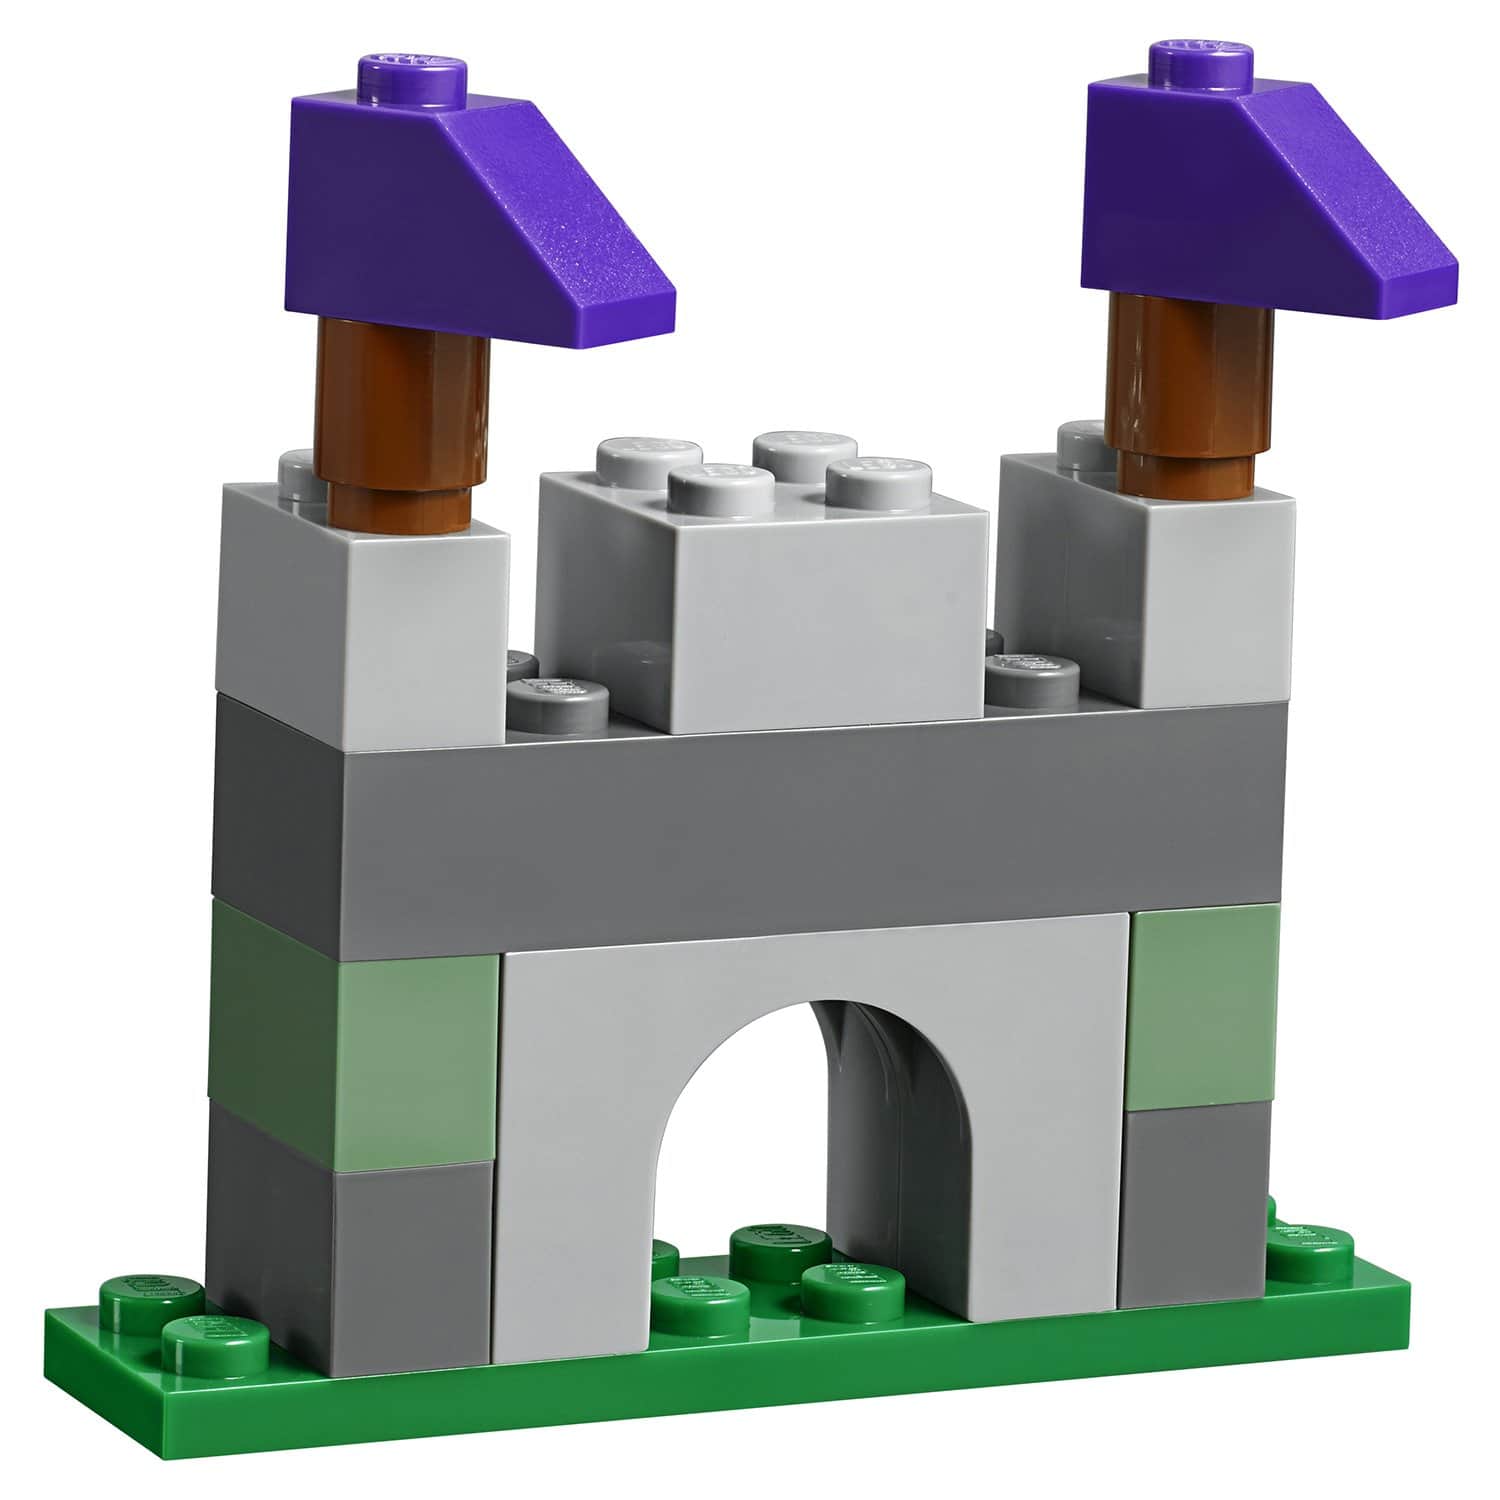 Конструктор LEGO Classic 10713 Чемоданчик для творчества